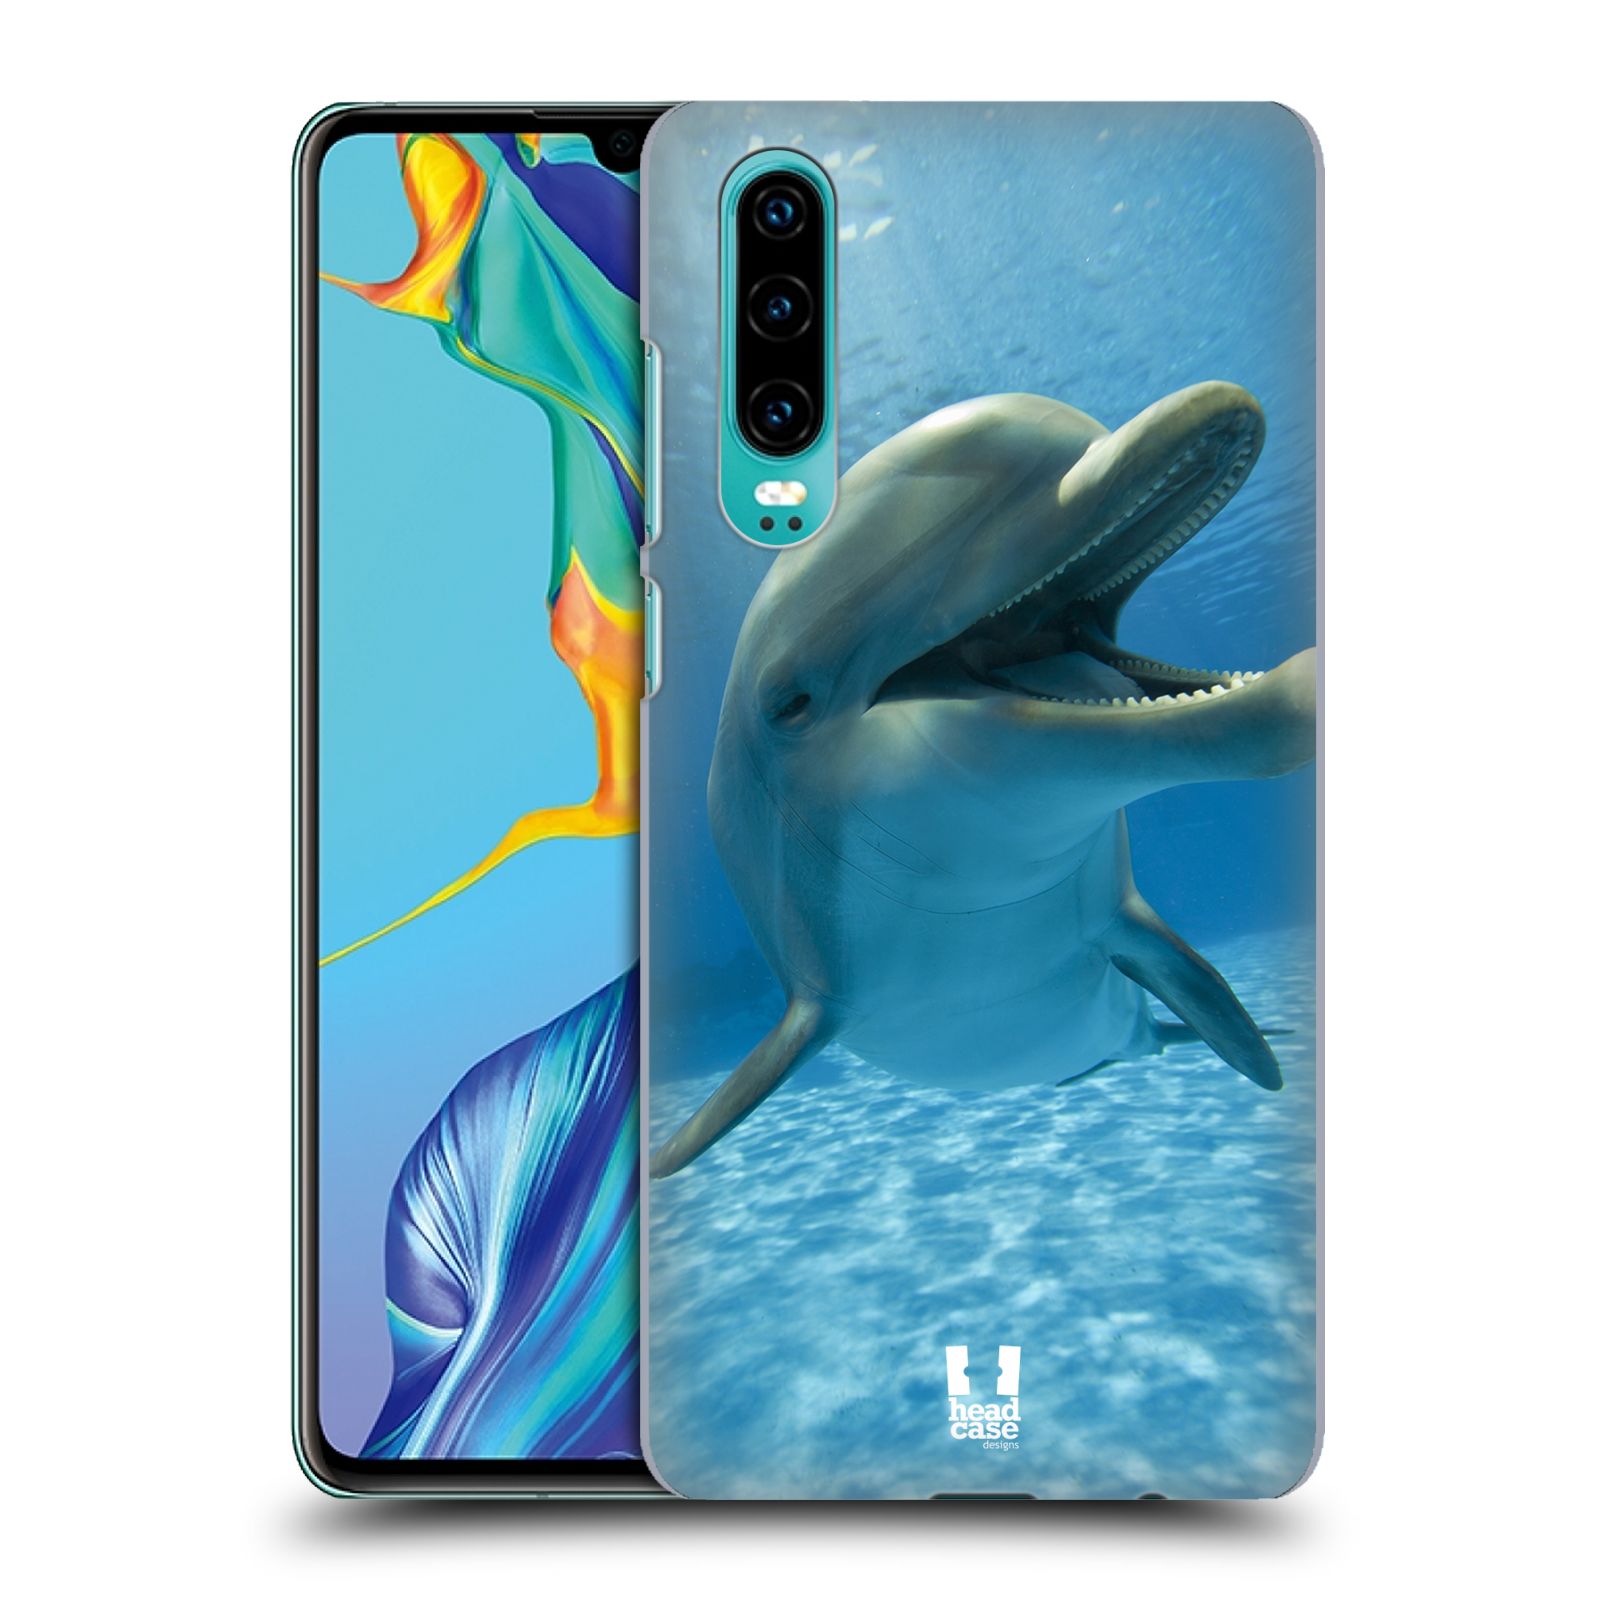 Zadní obal pro mobil Huawei P30 - HEAD CASE - Svět zvířat delfín v moři